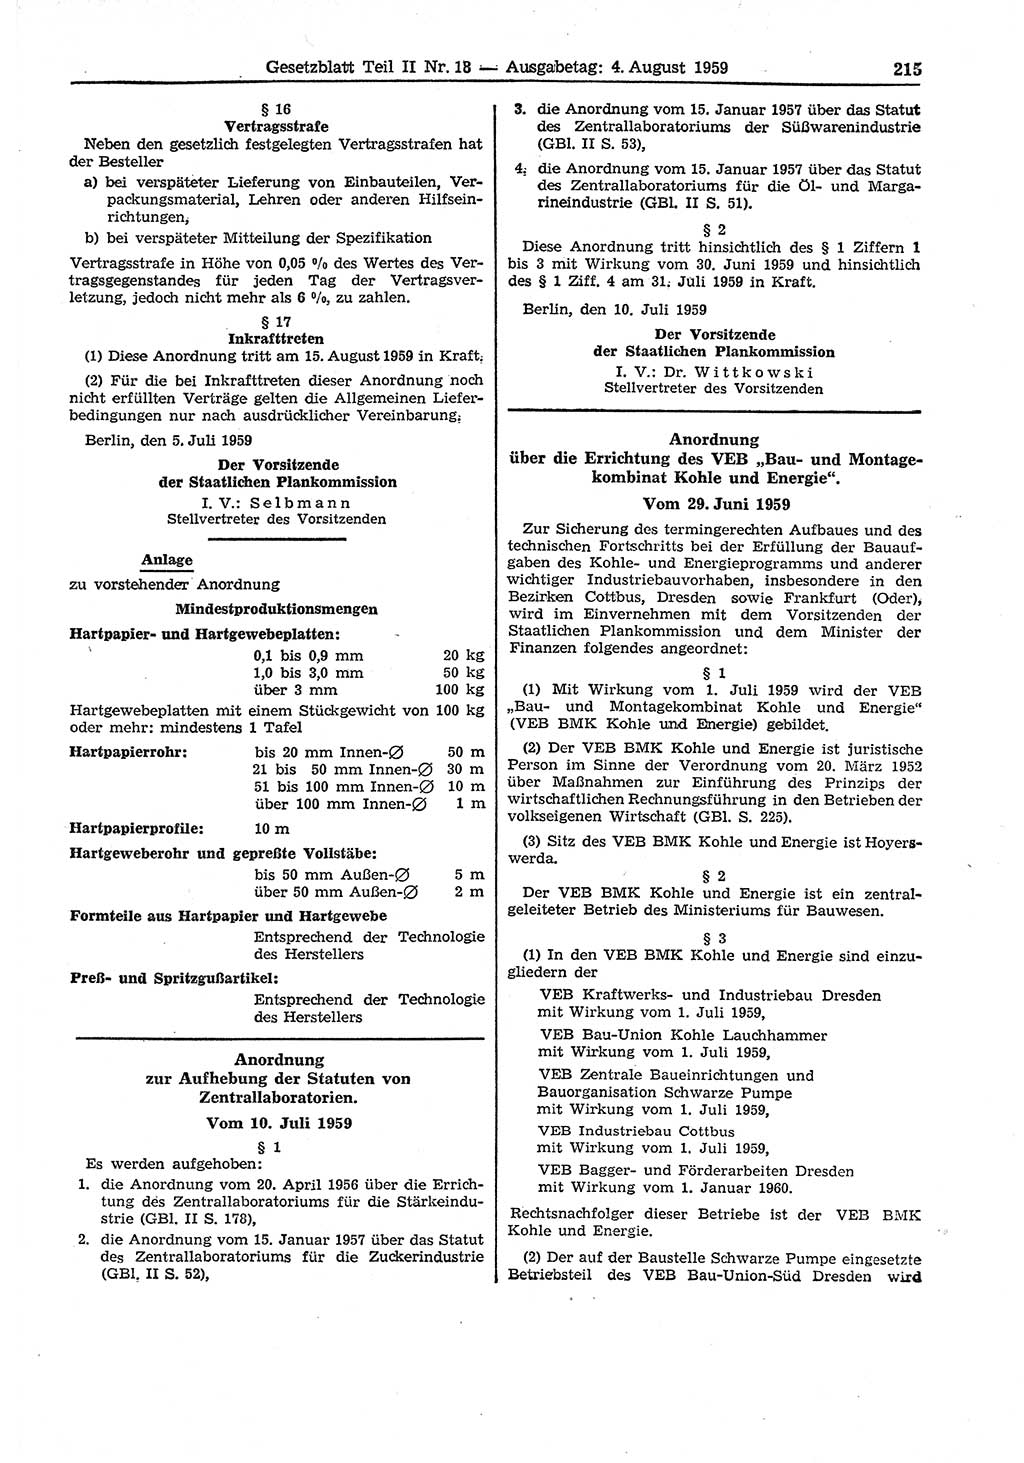 Gesetzblatt (GBl.) der Deutschen Demokratischen Republik (DDR) Teil ⅠⅠ 1959, Seite 215 (GBl. DDR ⅠⅠ 1959, S. 215)